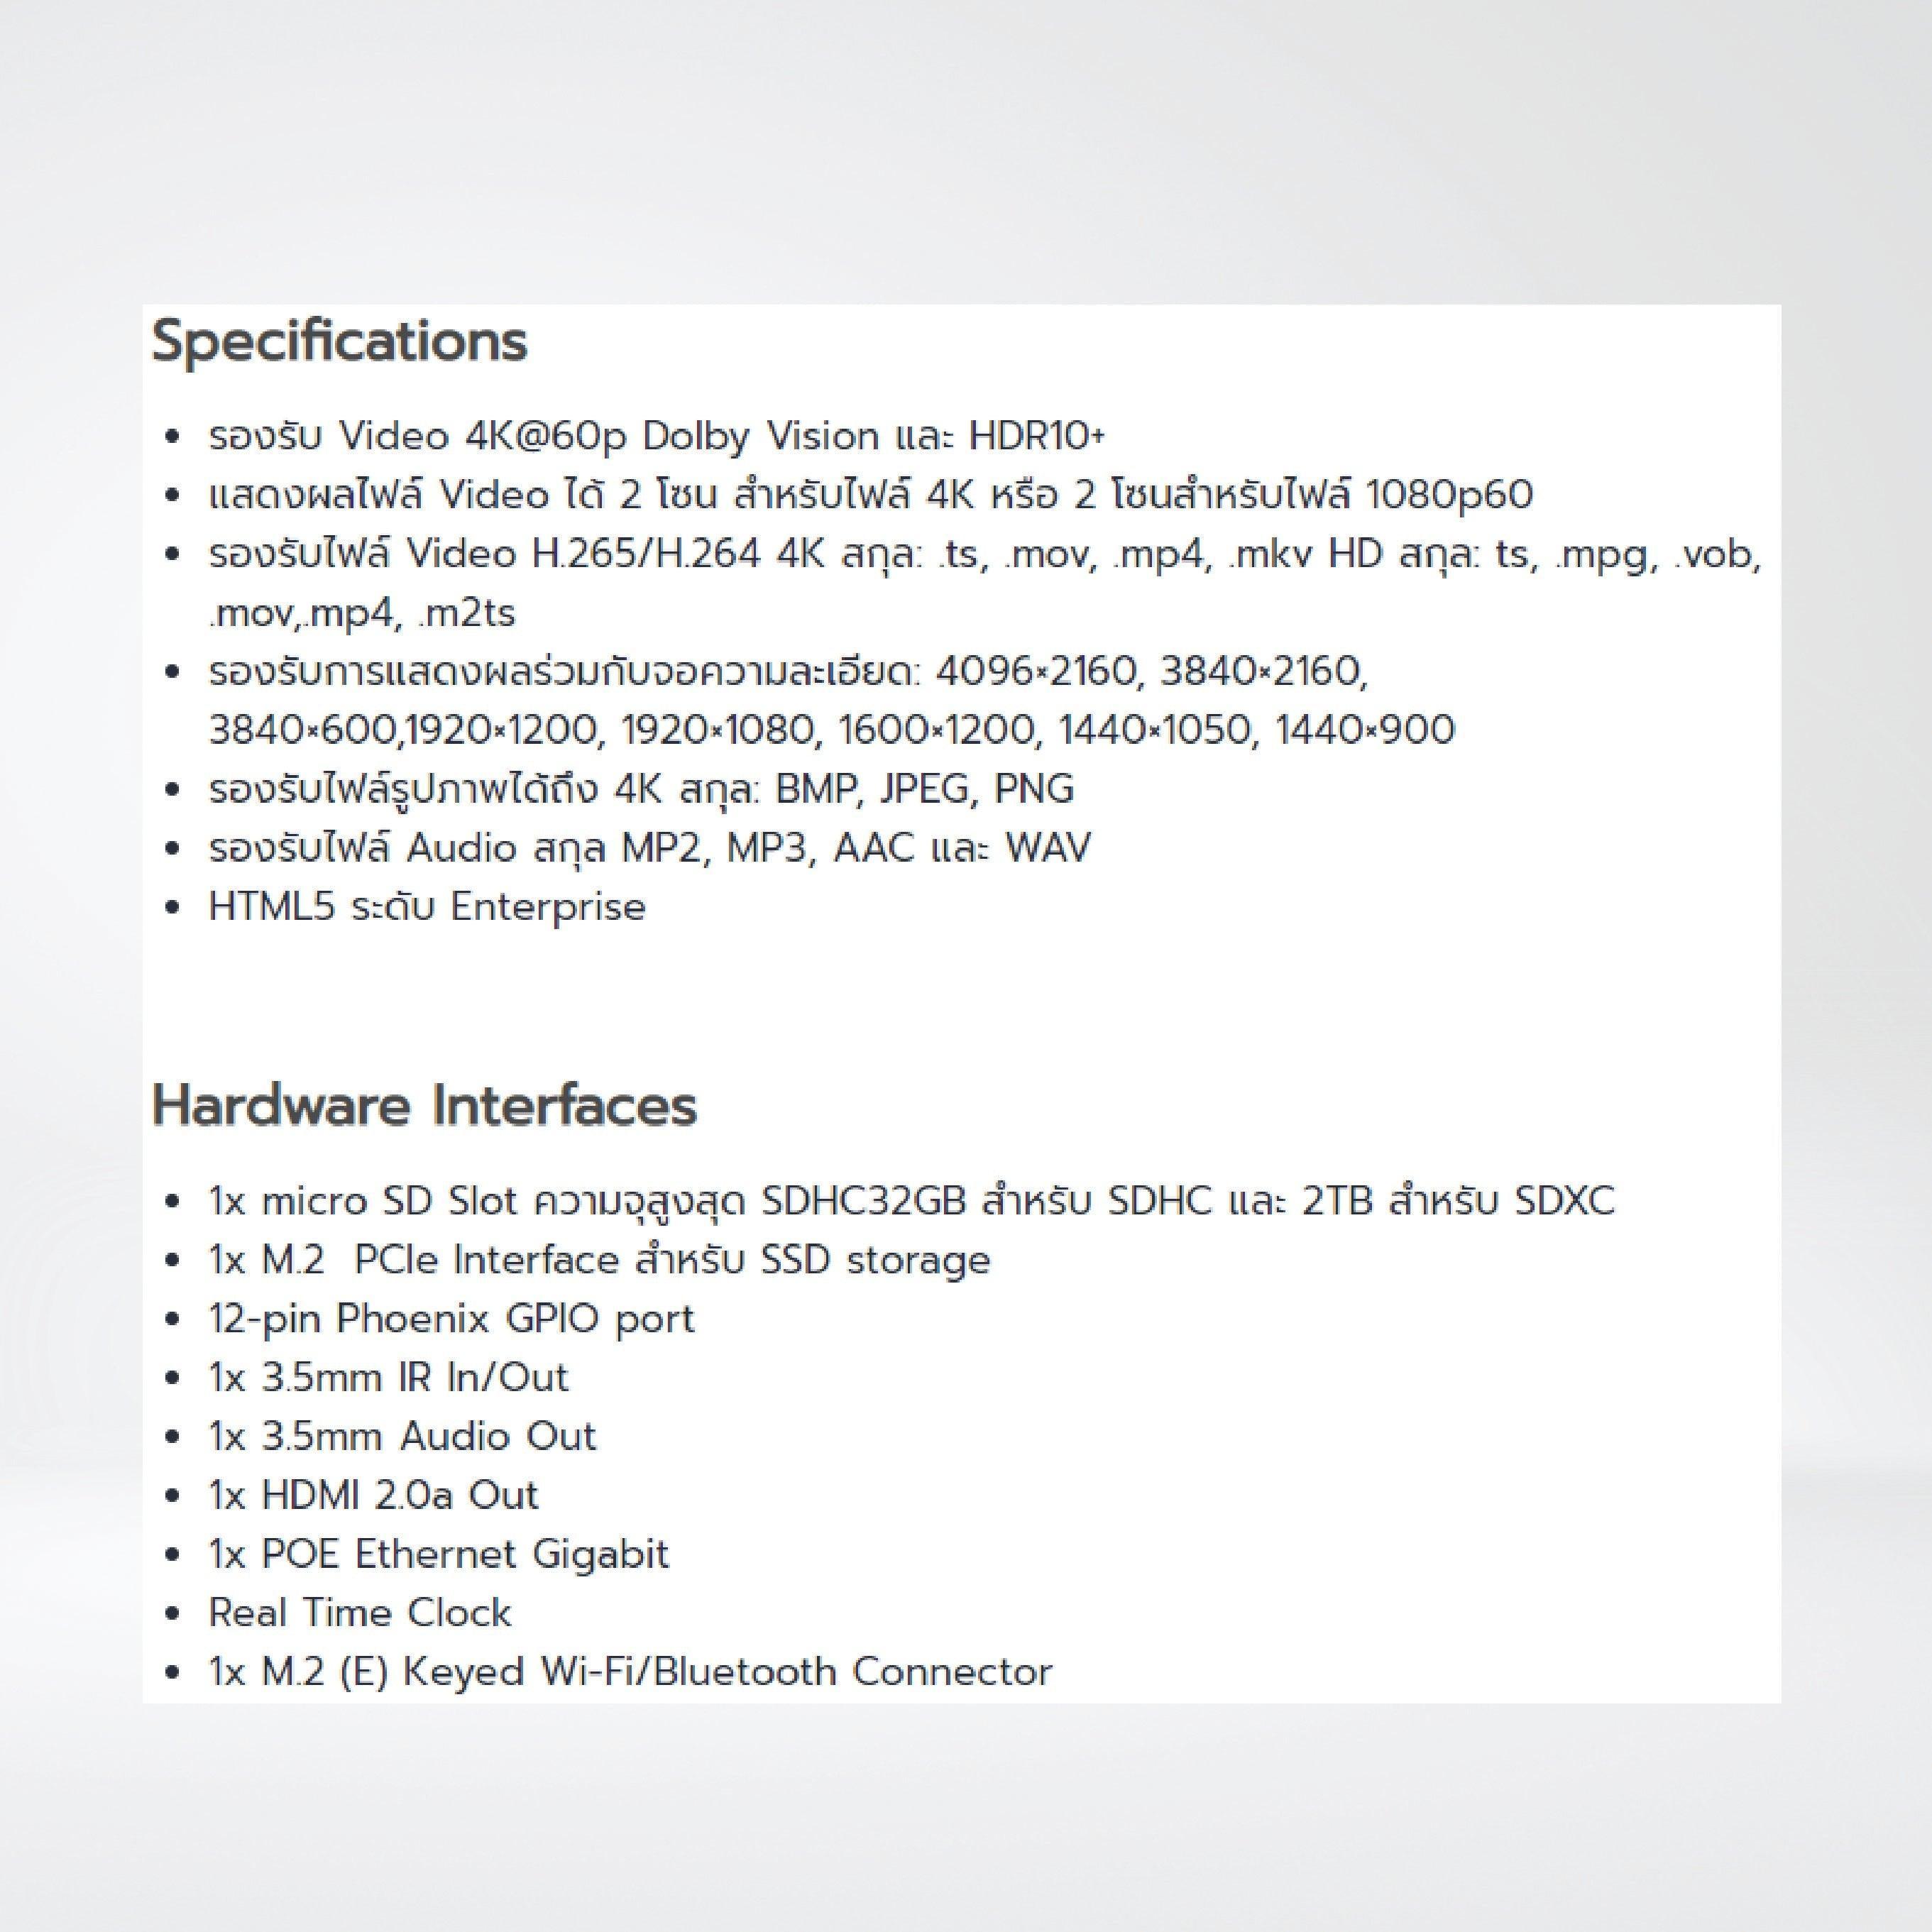 XT244 - Standard I/O Digital Signage Player + 64GB Micro SD - Riverplus